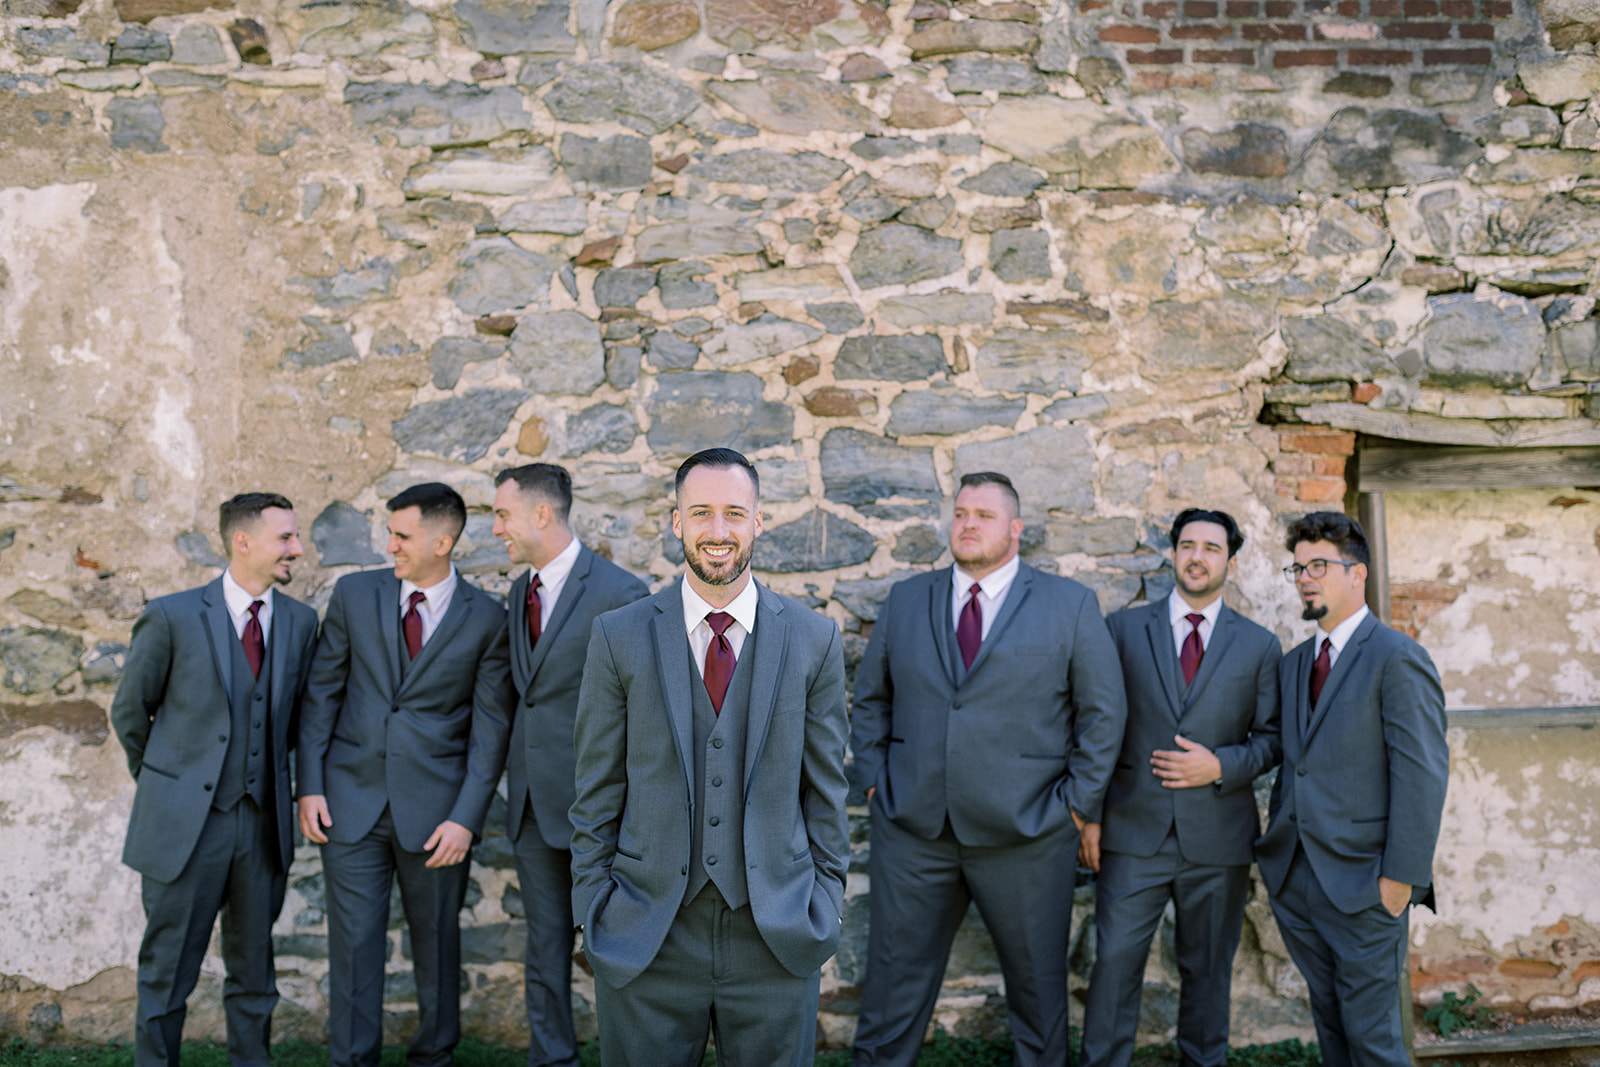 Pennsylvania wedding photographer captures groom standing with groomsmen